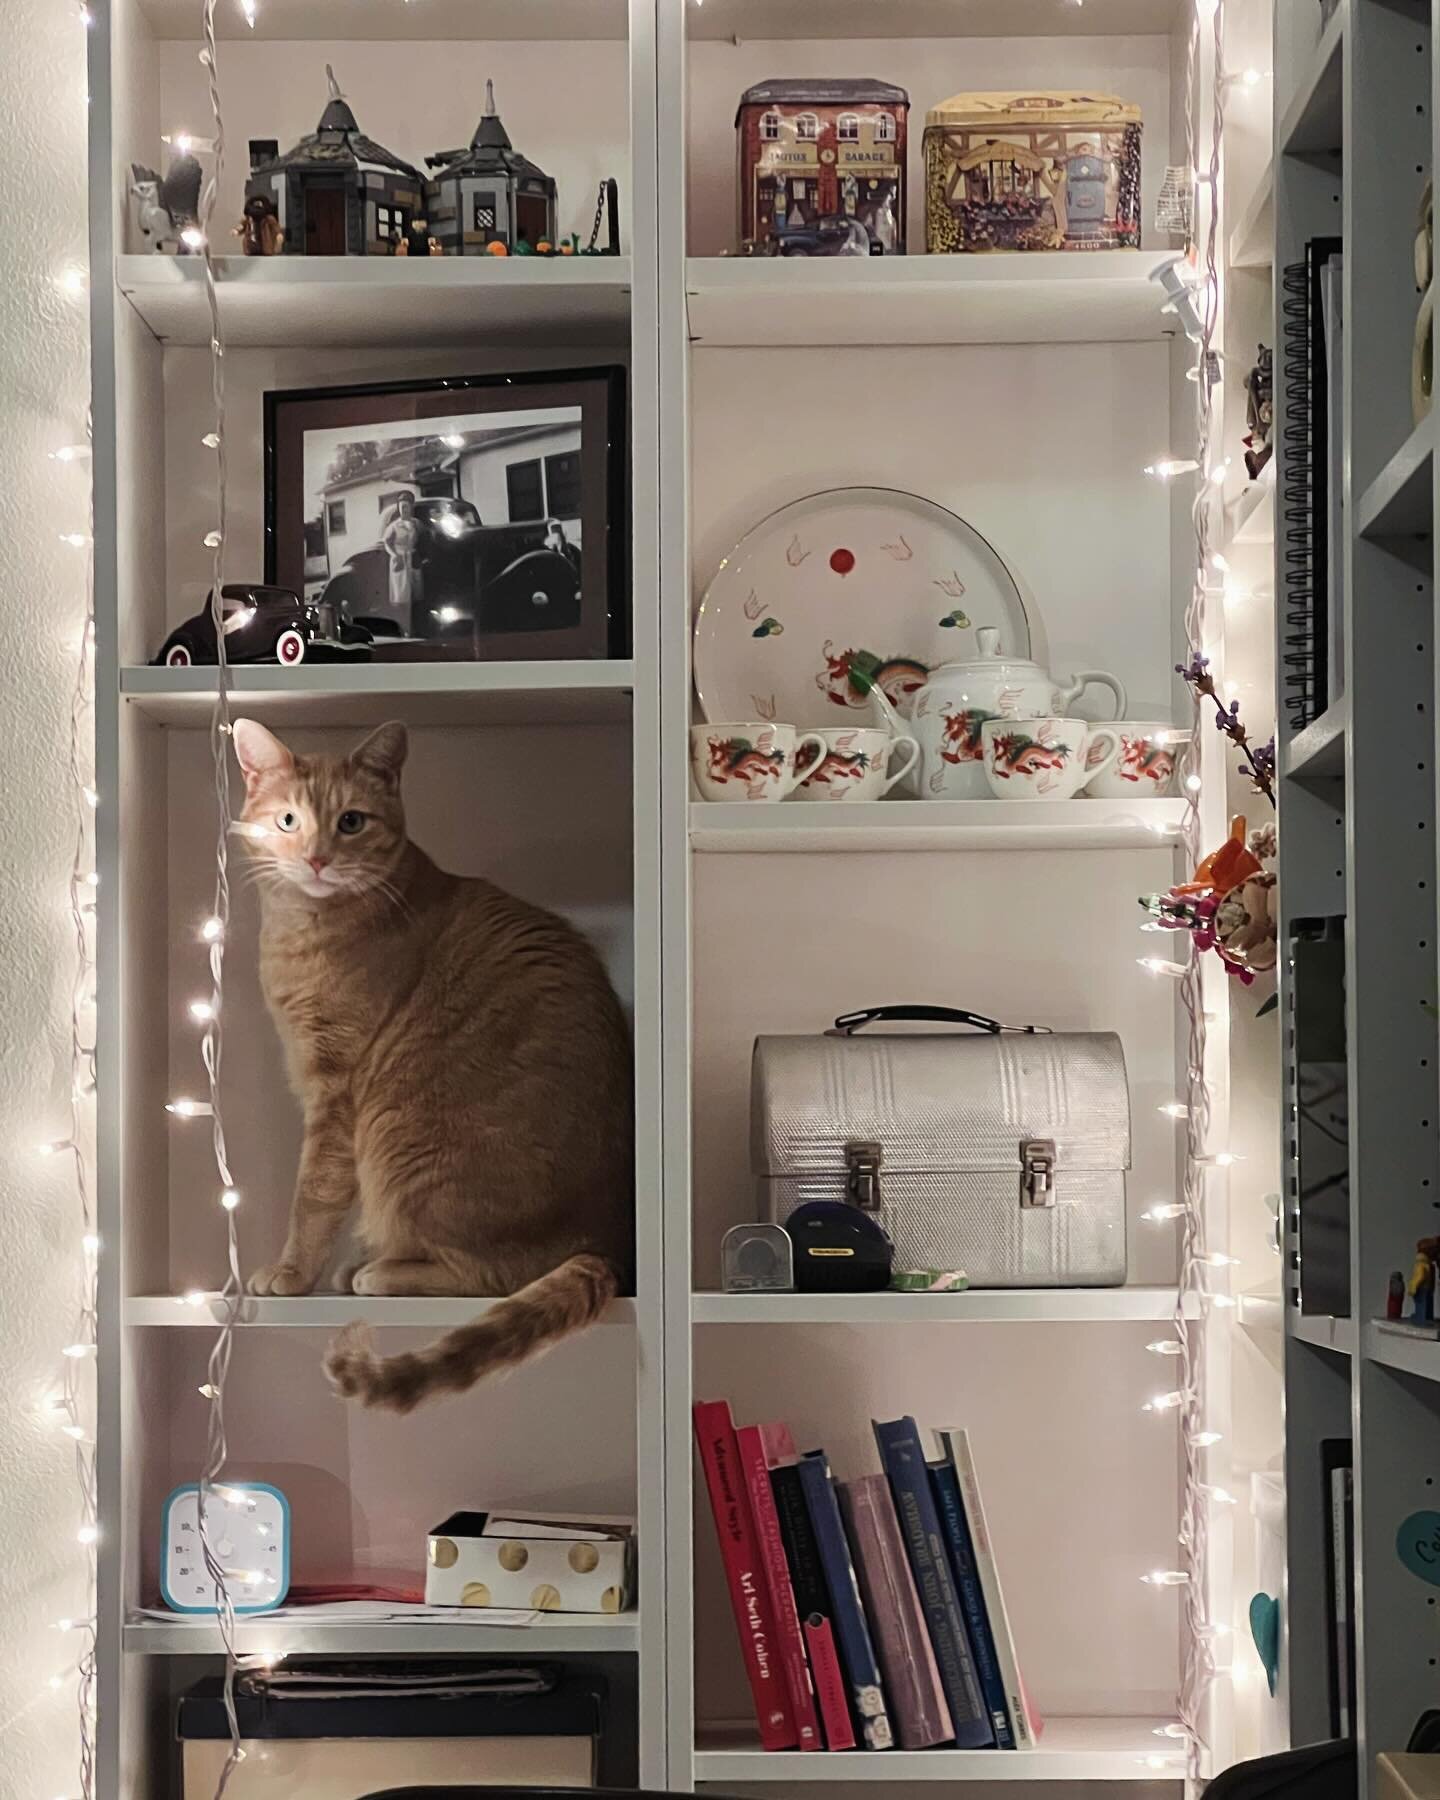 We have a cat shelf. #happyNewYear